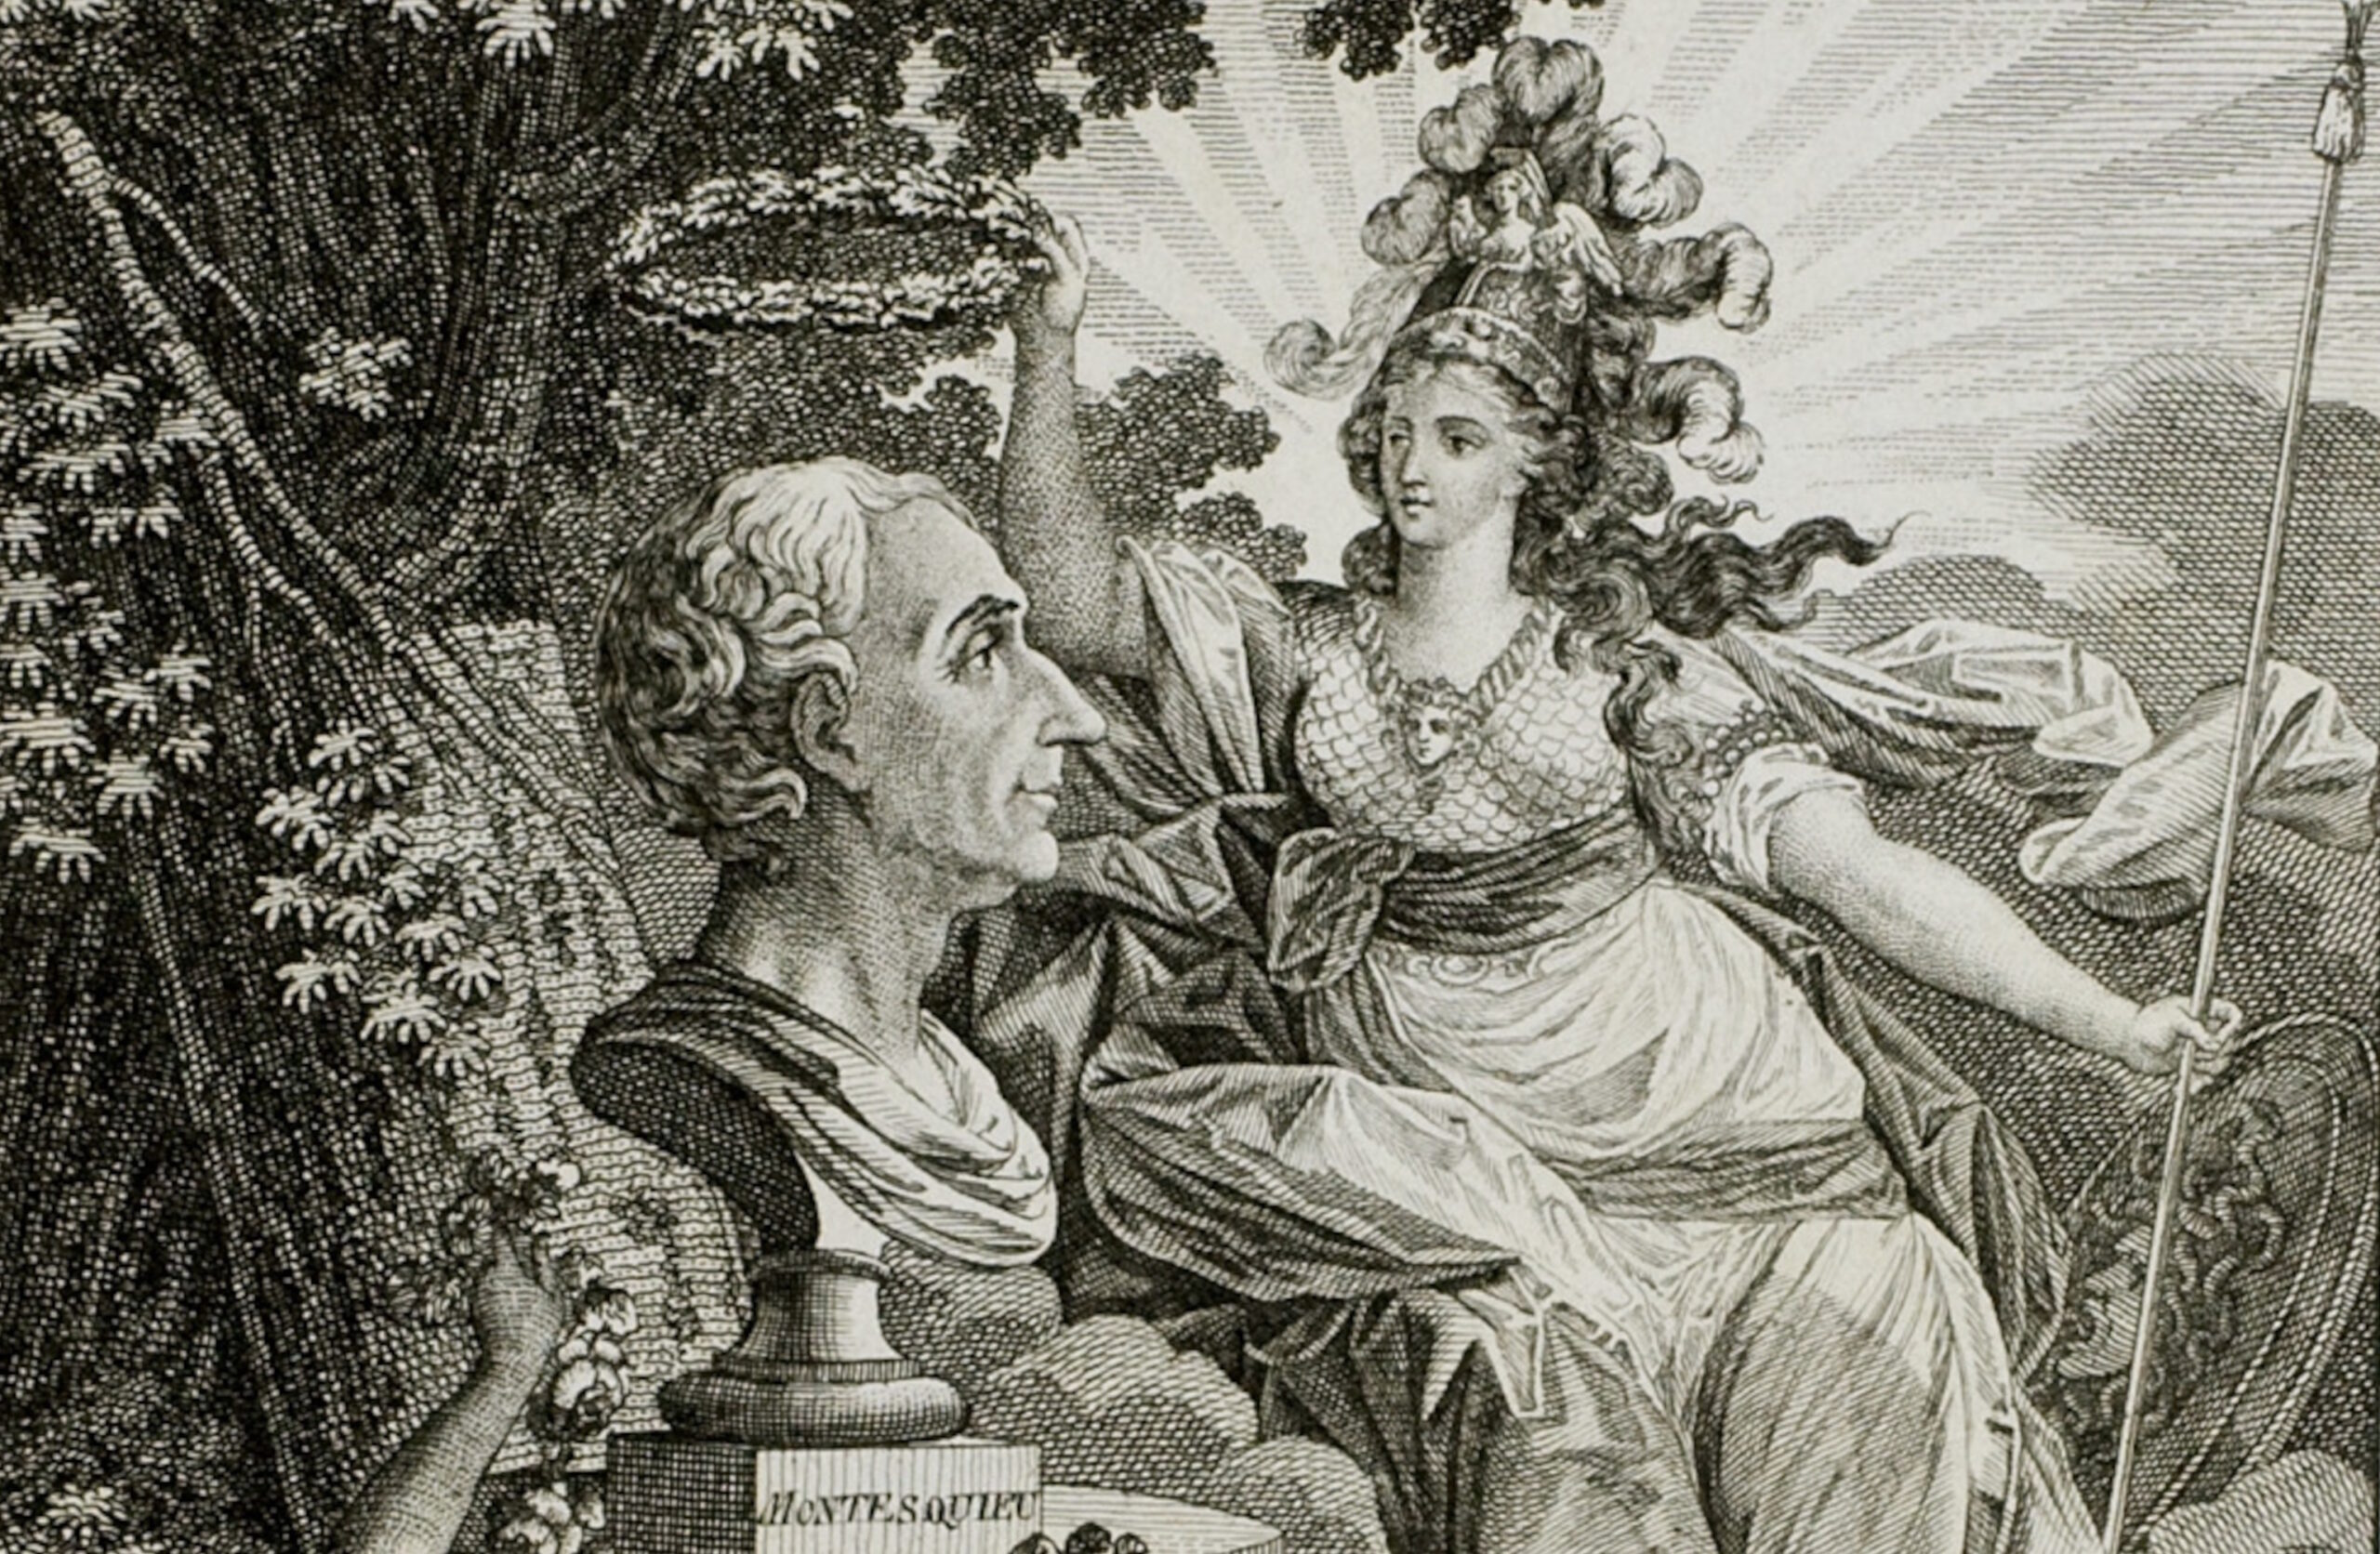 Büste von Montesquieu, gekrönt mit Lorbeerkranz